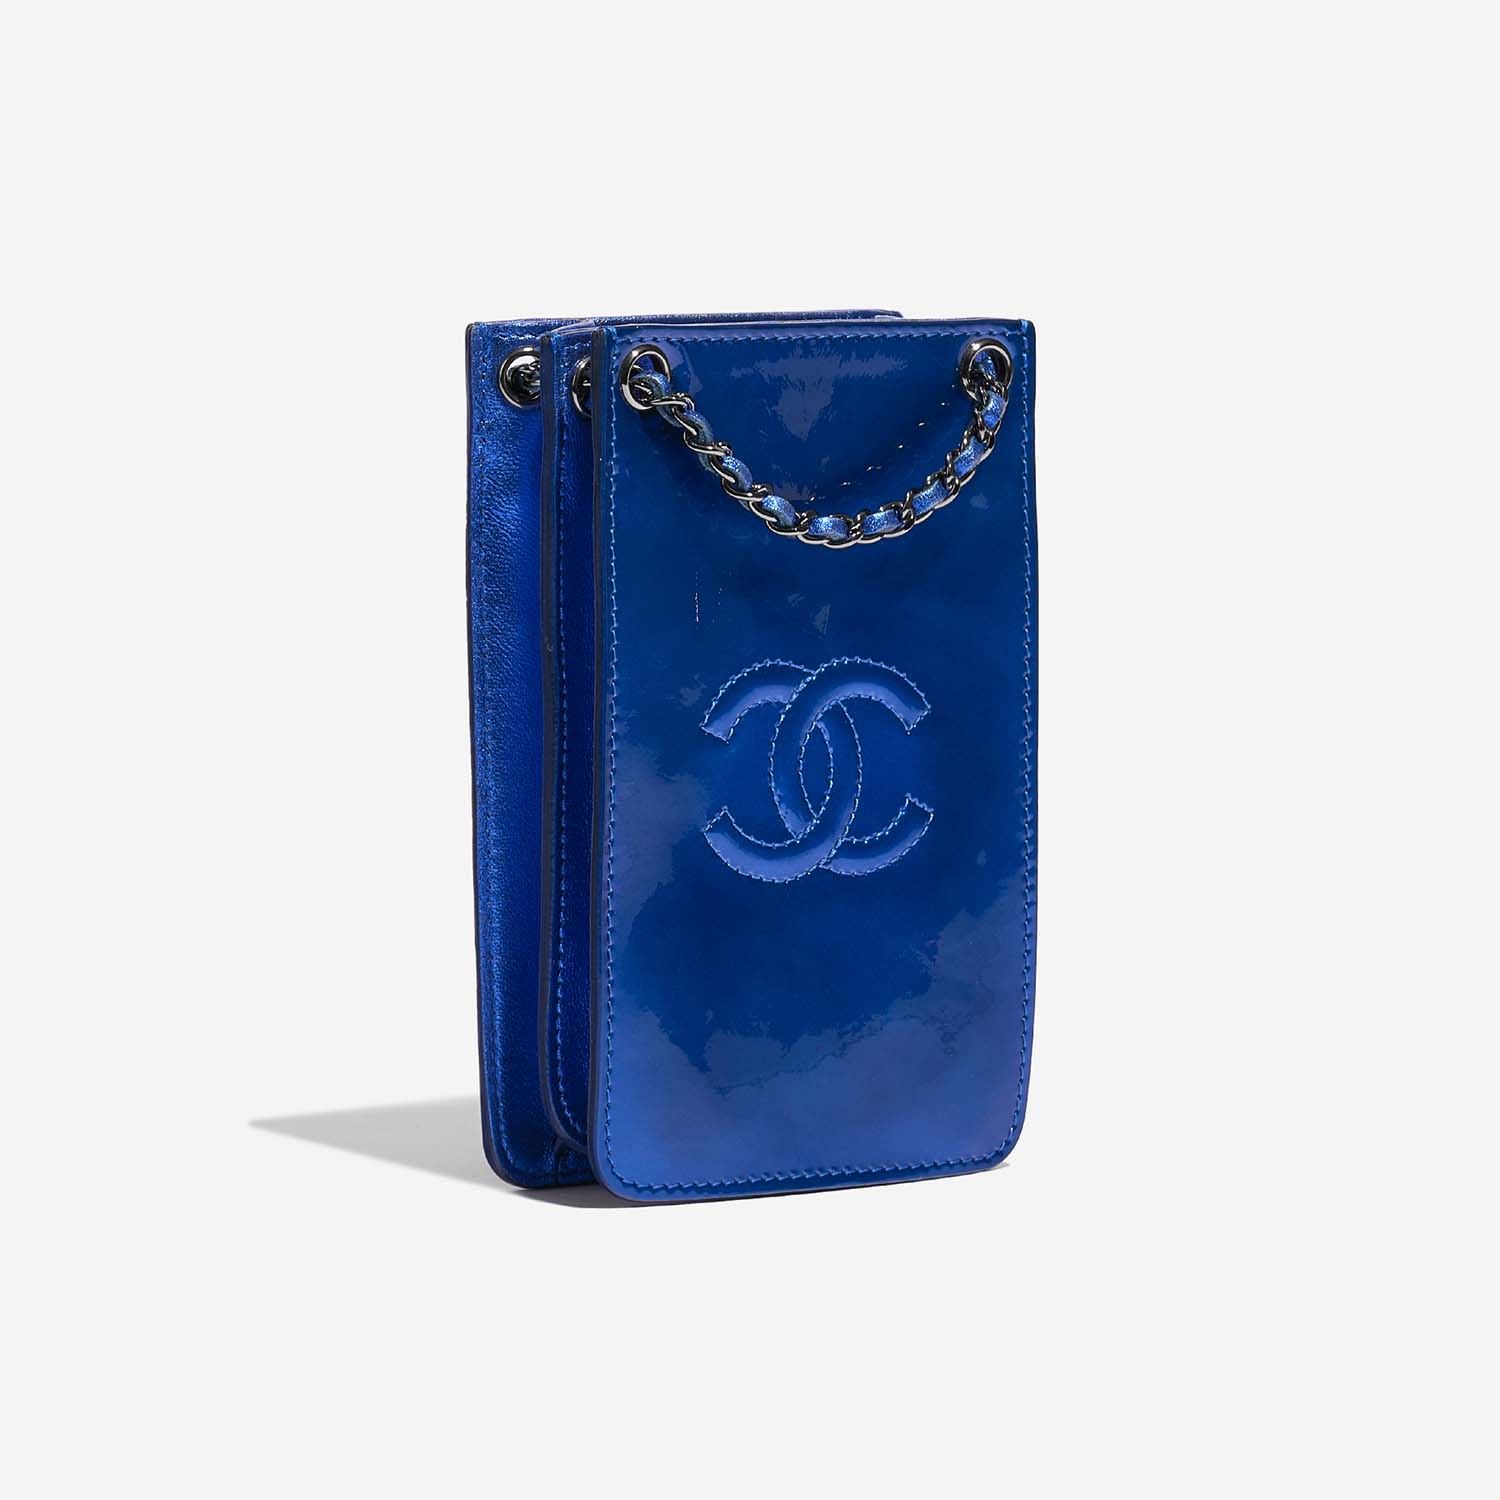 Chanel PhoneHolder MetallicBlue Side Front | Verkaufen Sie Ihre Designer-Tasche auf Saclab.com